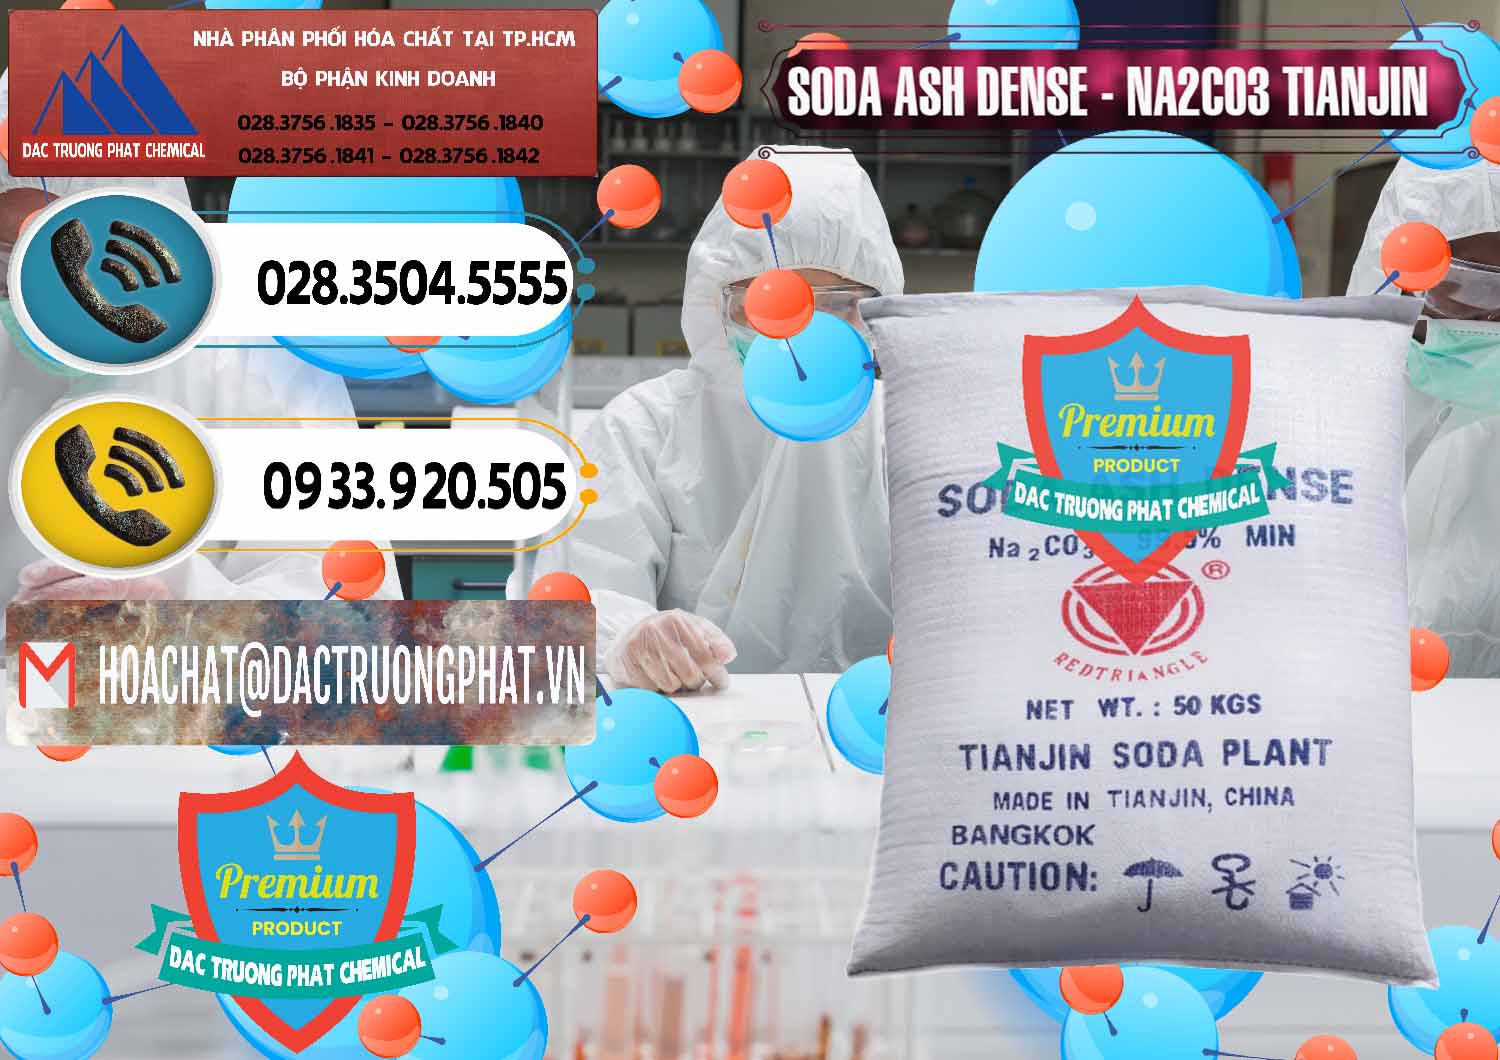 Nơi bán _ cung ứng Soda Ash Dense - NA2CO3 Tianjin Trung Quốc China - 0336 - Chuyên bán và cung cấp hóa chất tại TP.HCM - hoachatdetnhuom.vn